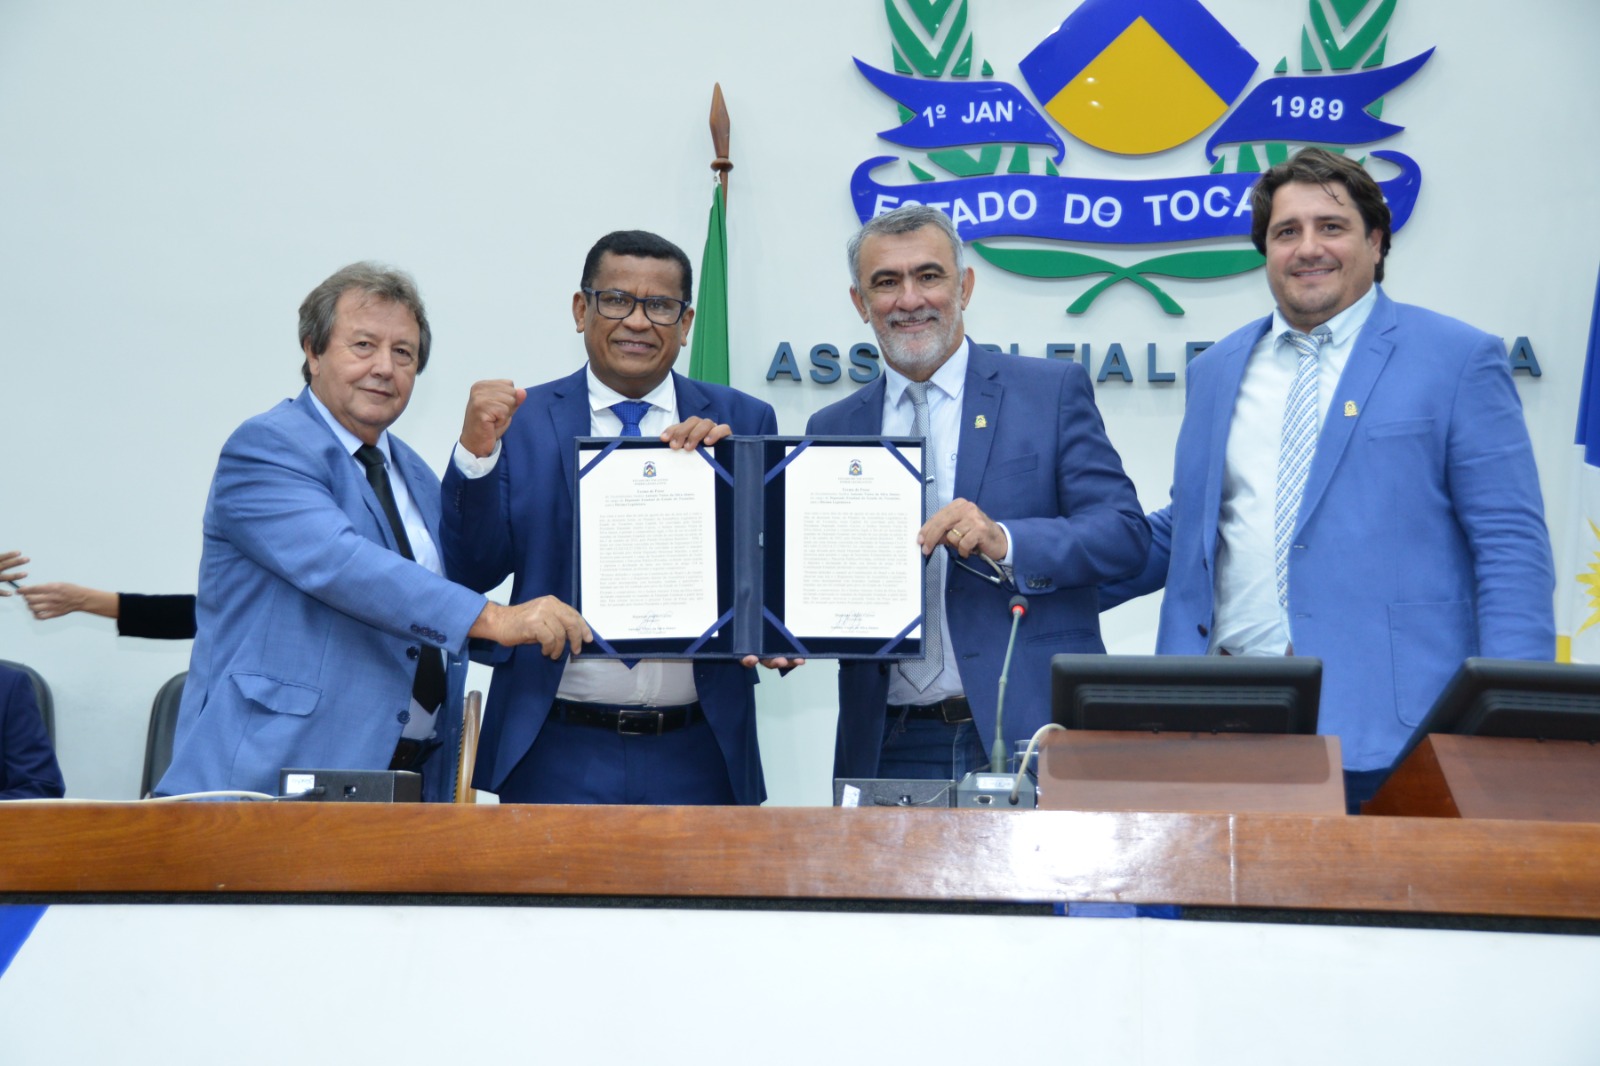 Júnior Brasão posa para foto com presidente da Assembleia Legislativa do Tocantins (Aleto), Amélio Cayres - Foto: Isis Oliveira